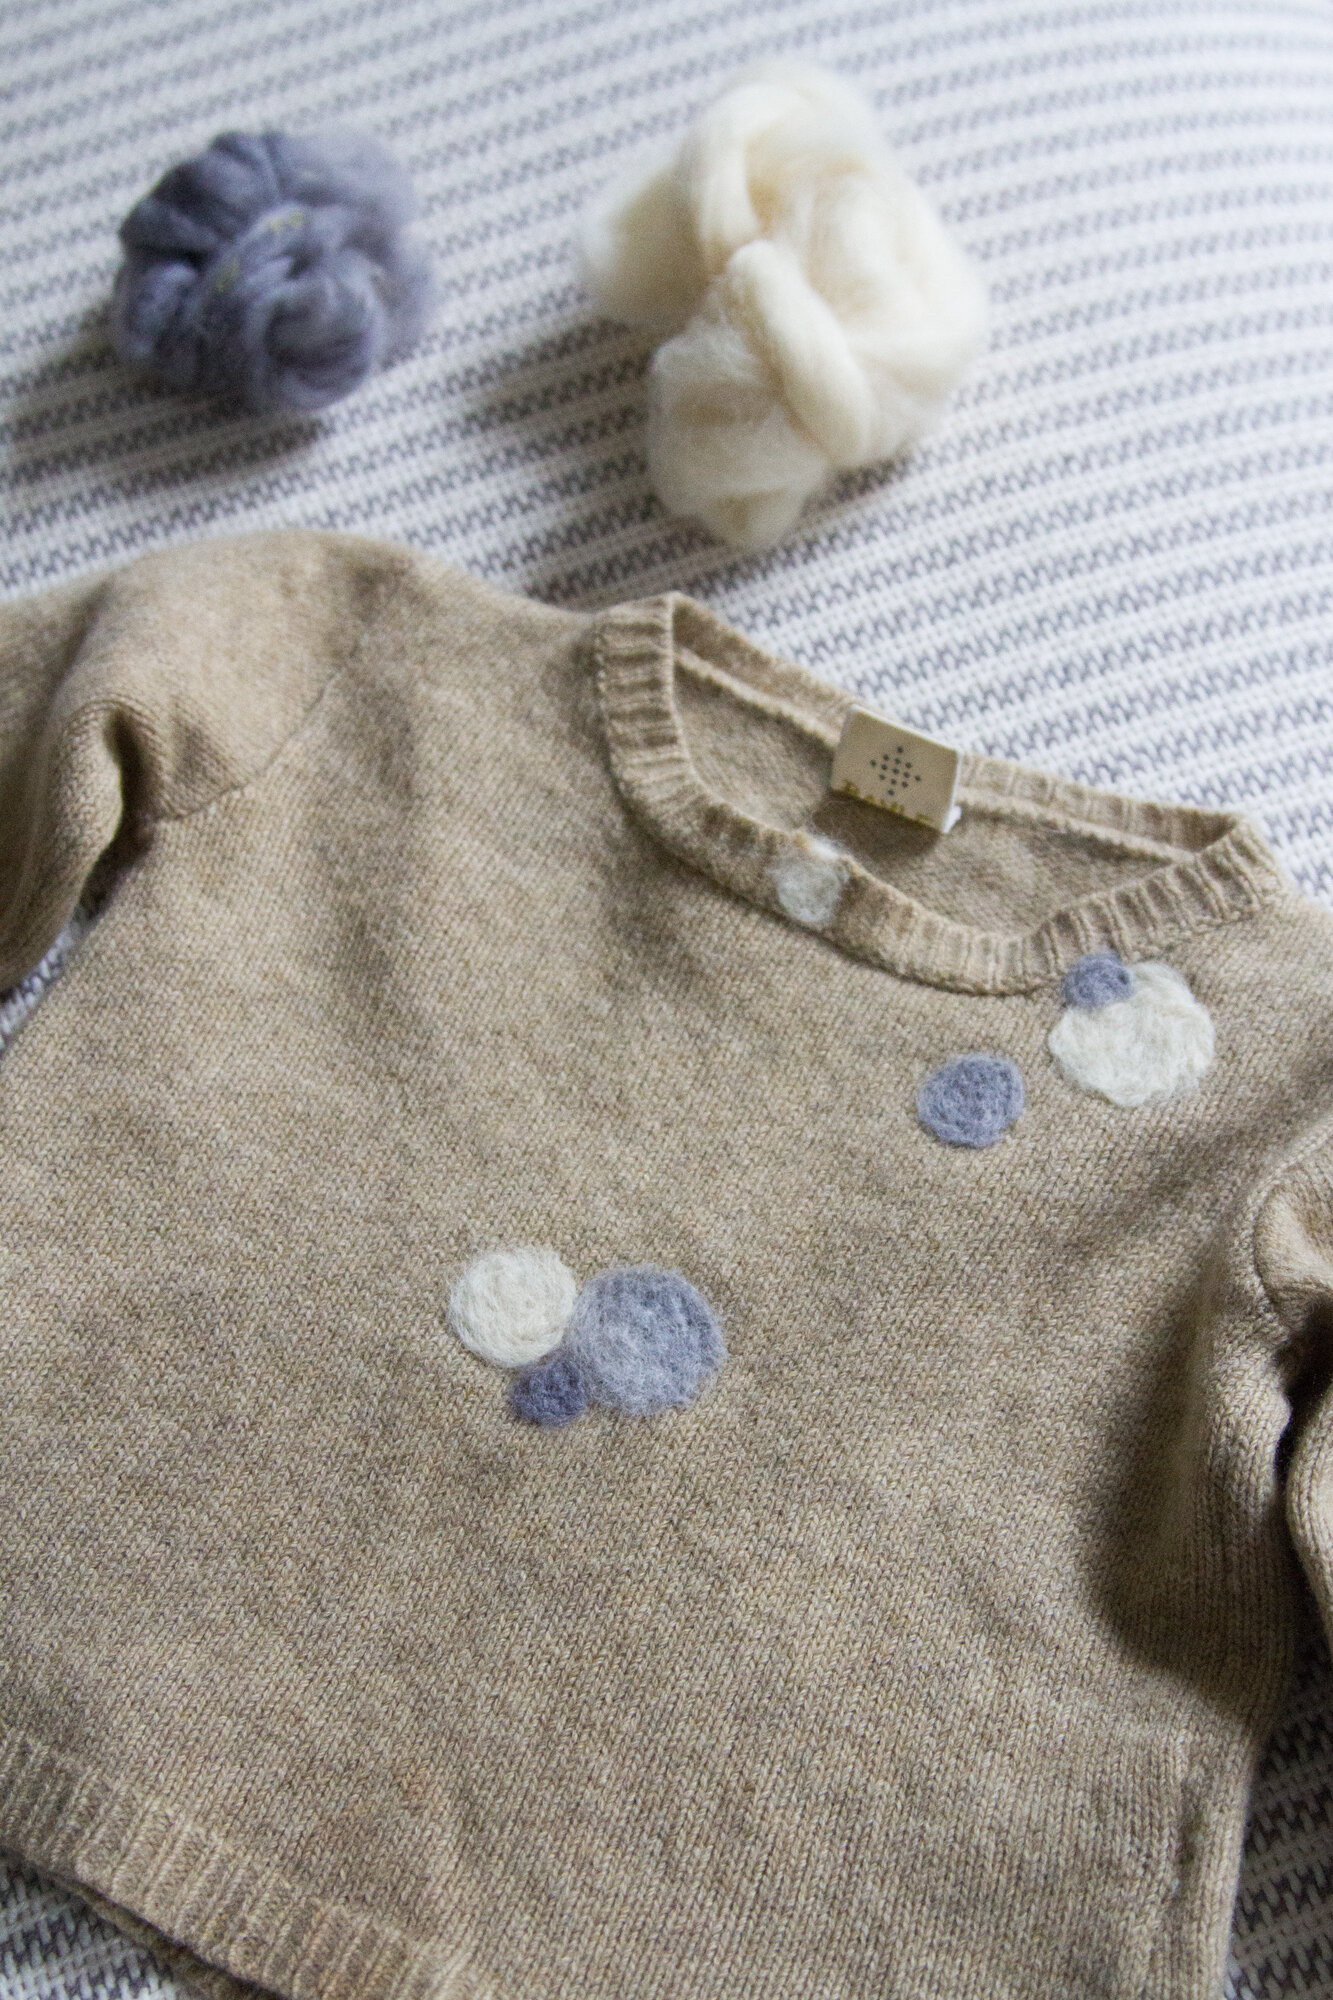 making simple wool sweater repairs | reading my tea leaves